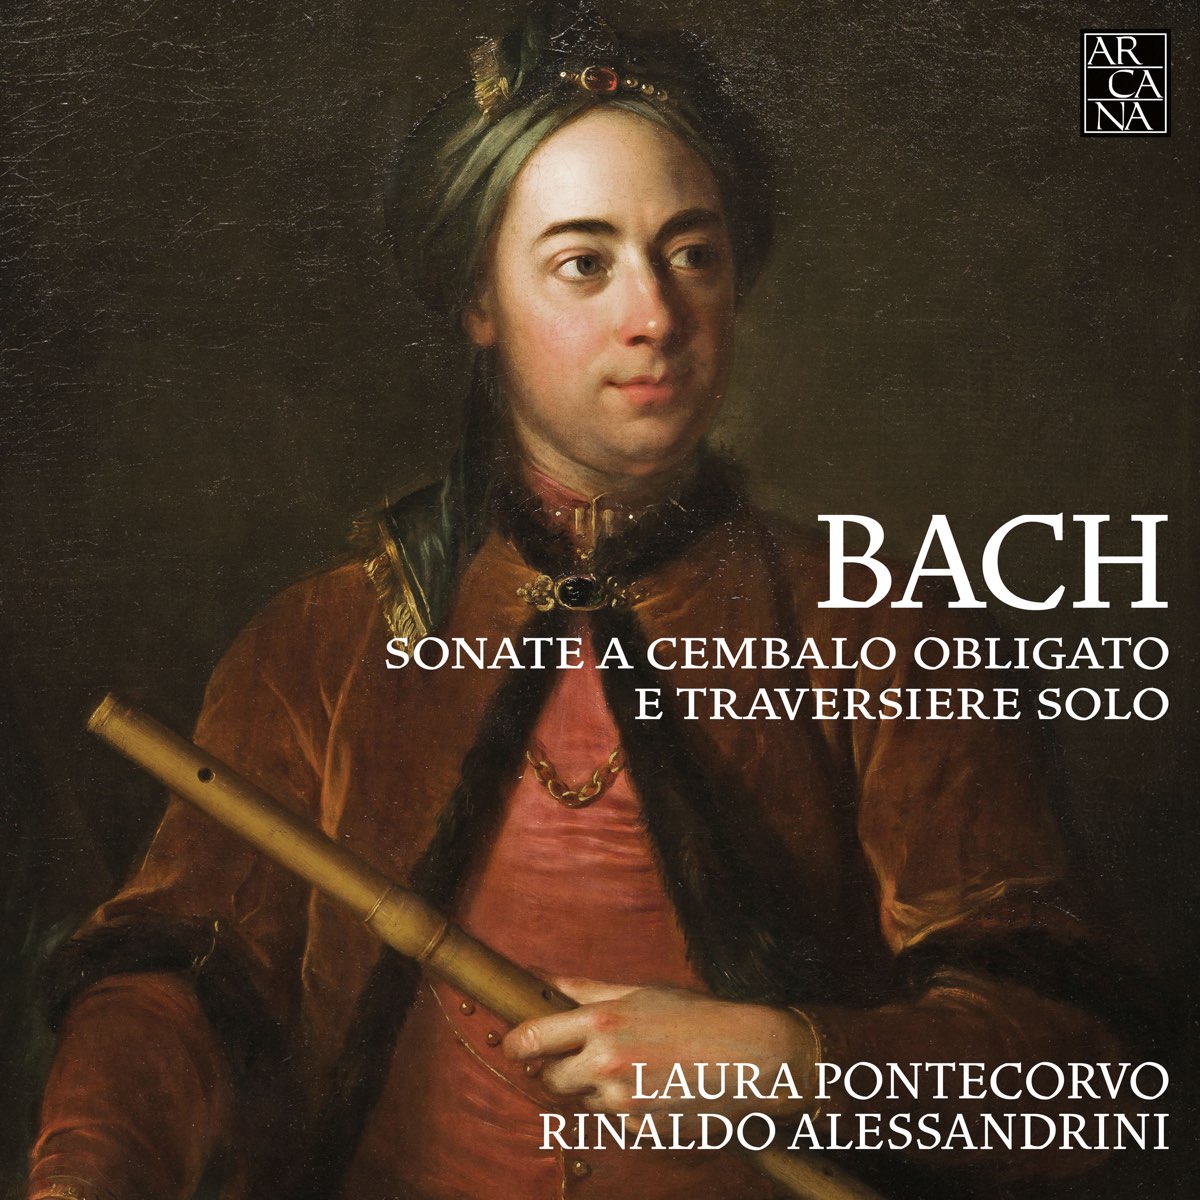 ‎Bach: Sonate a cembalo obligato e traversiere solo de Laura Pontecorvo ...